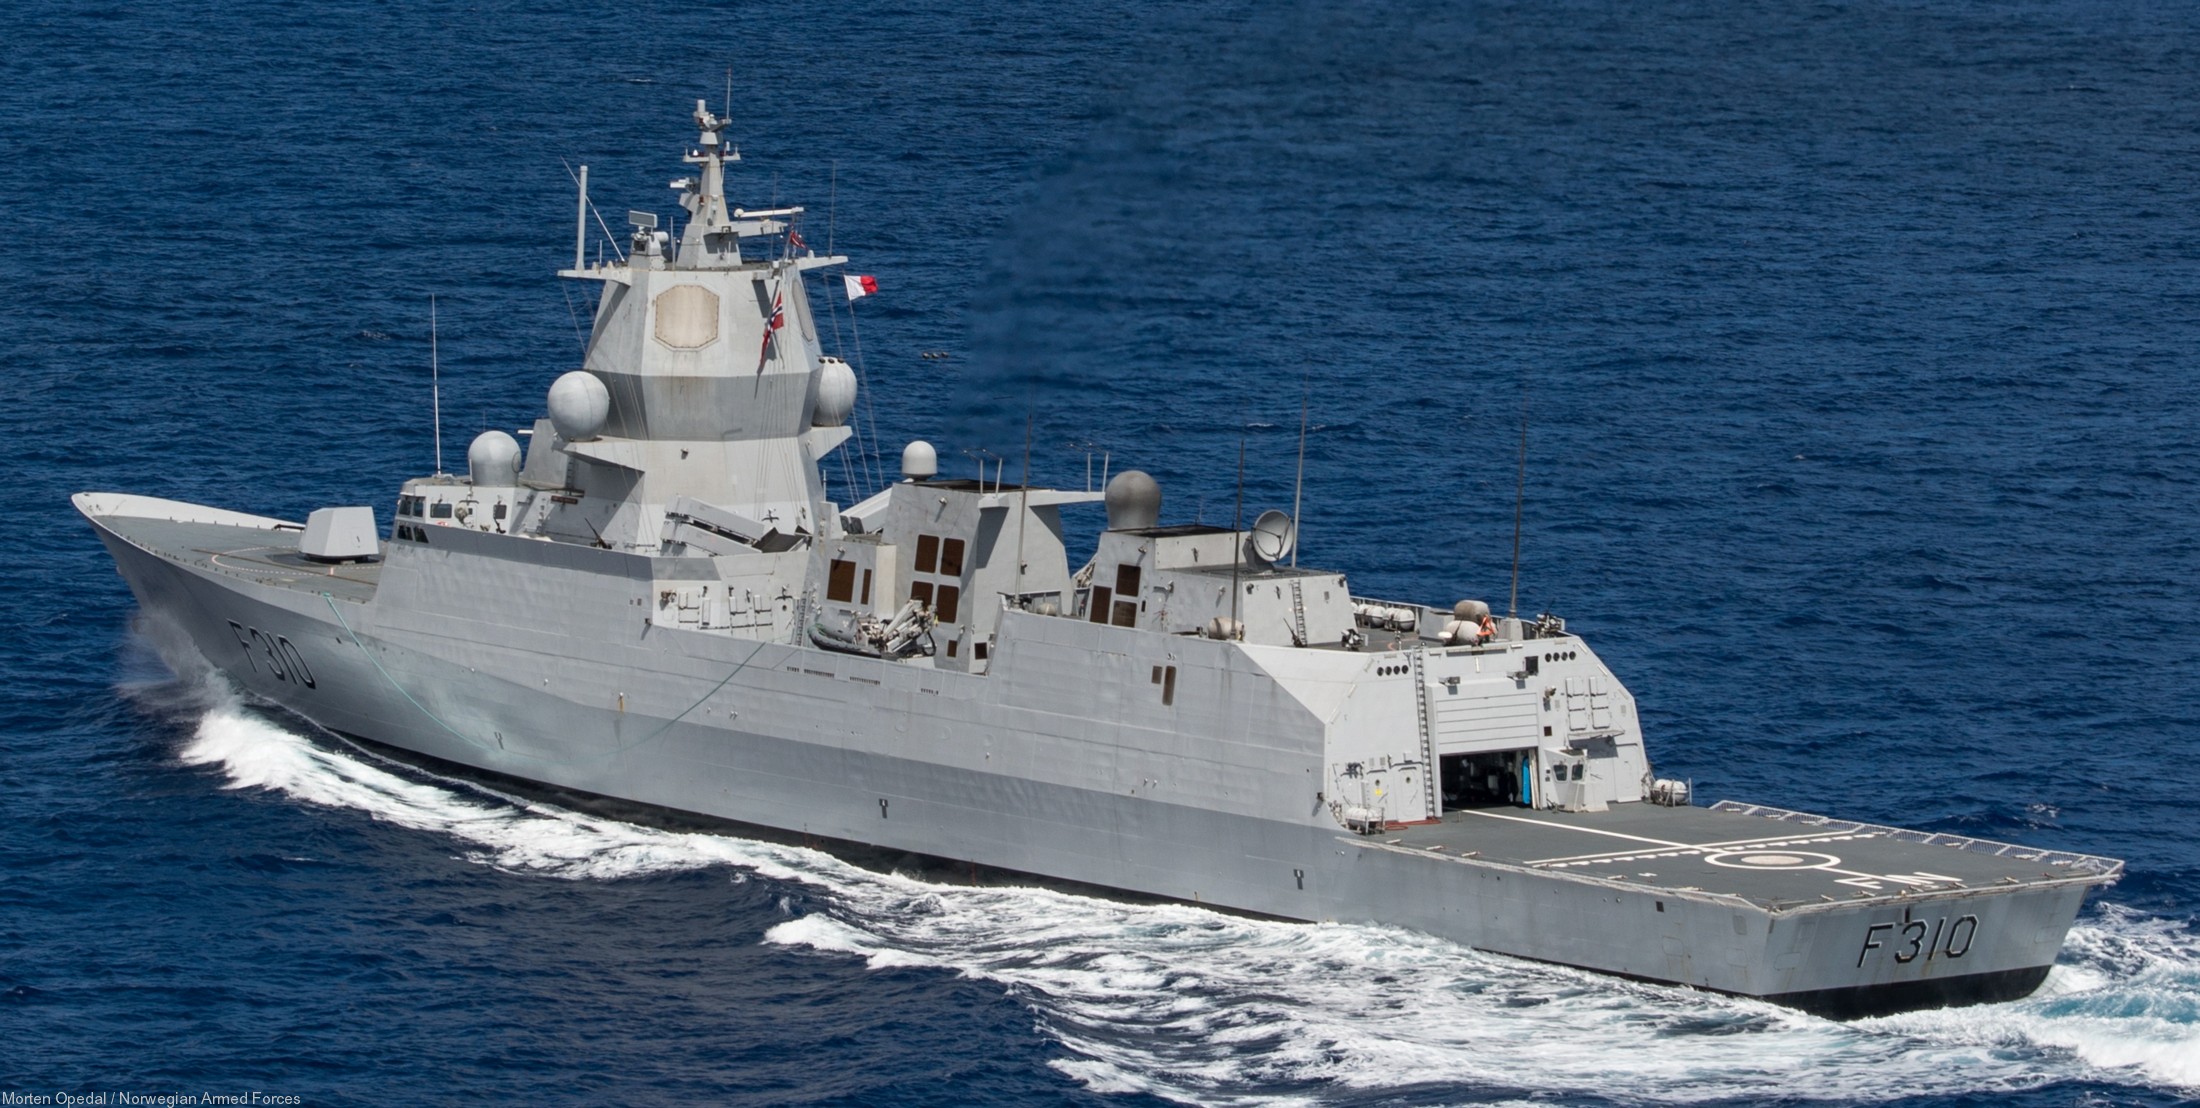 f-310 hnoms knm fridtjof nansen class frigate royal norwegian navy 02x